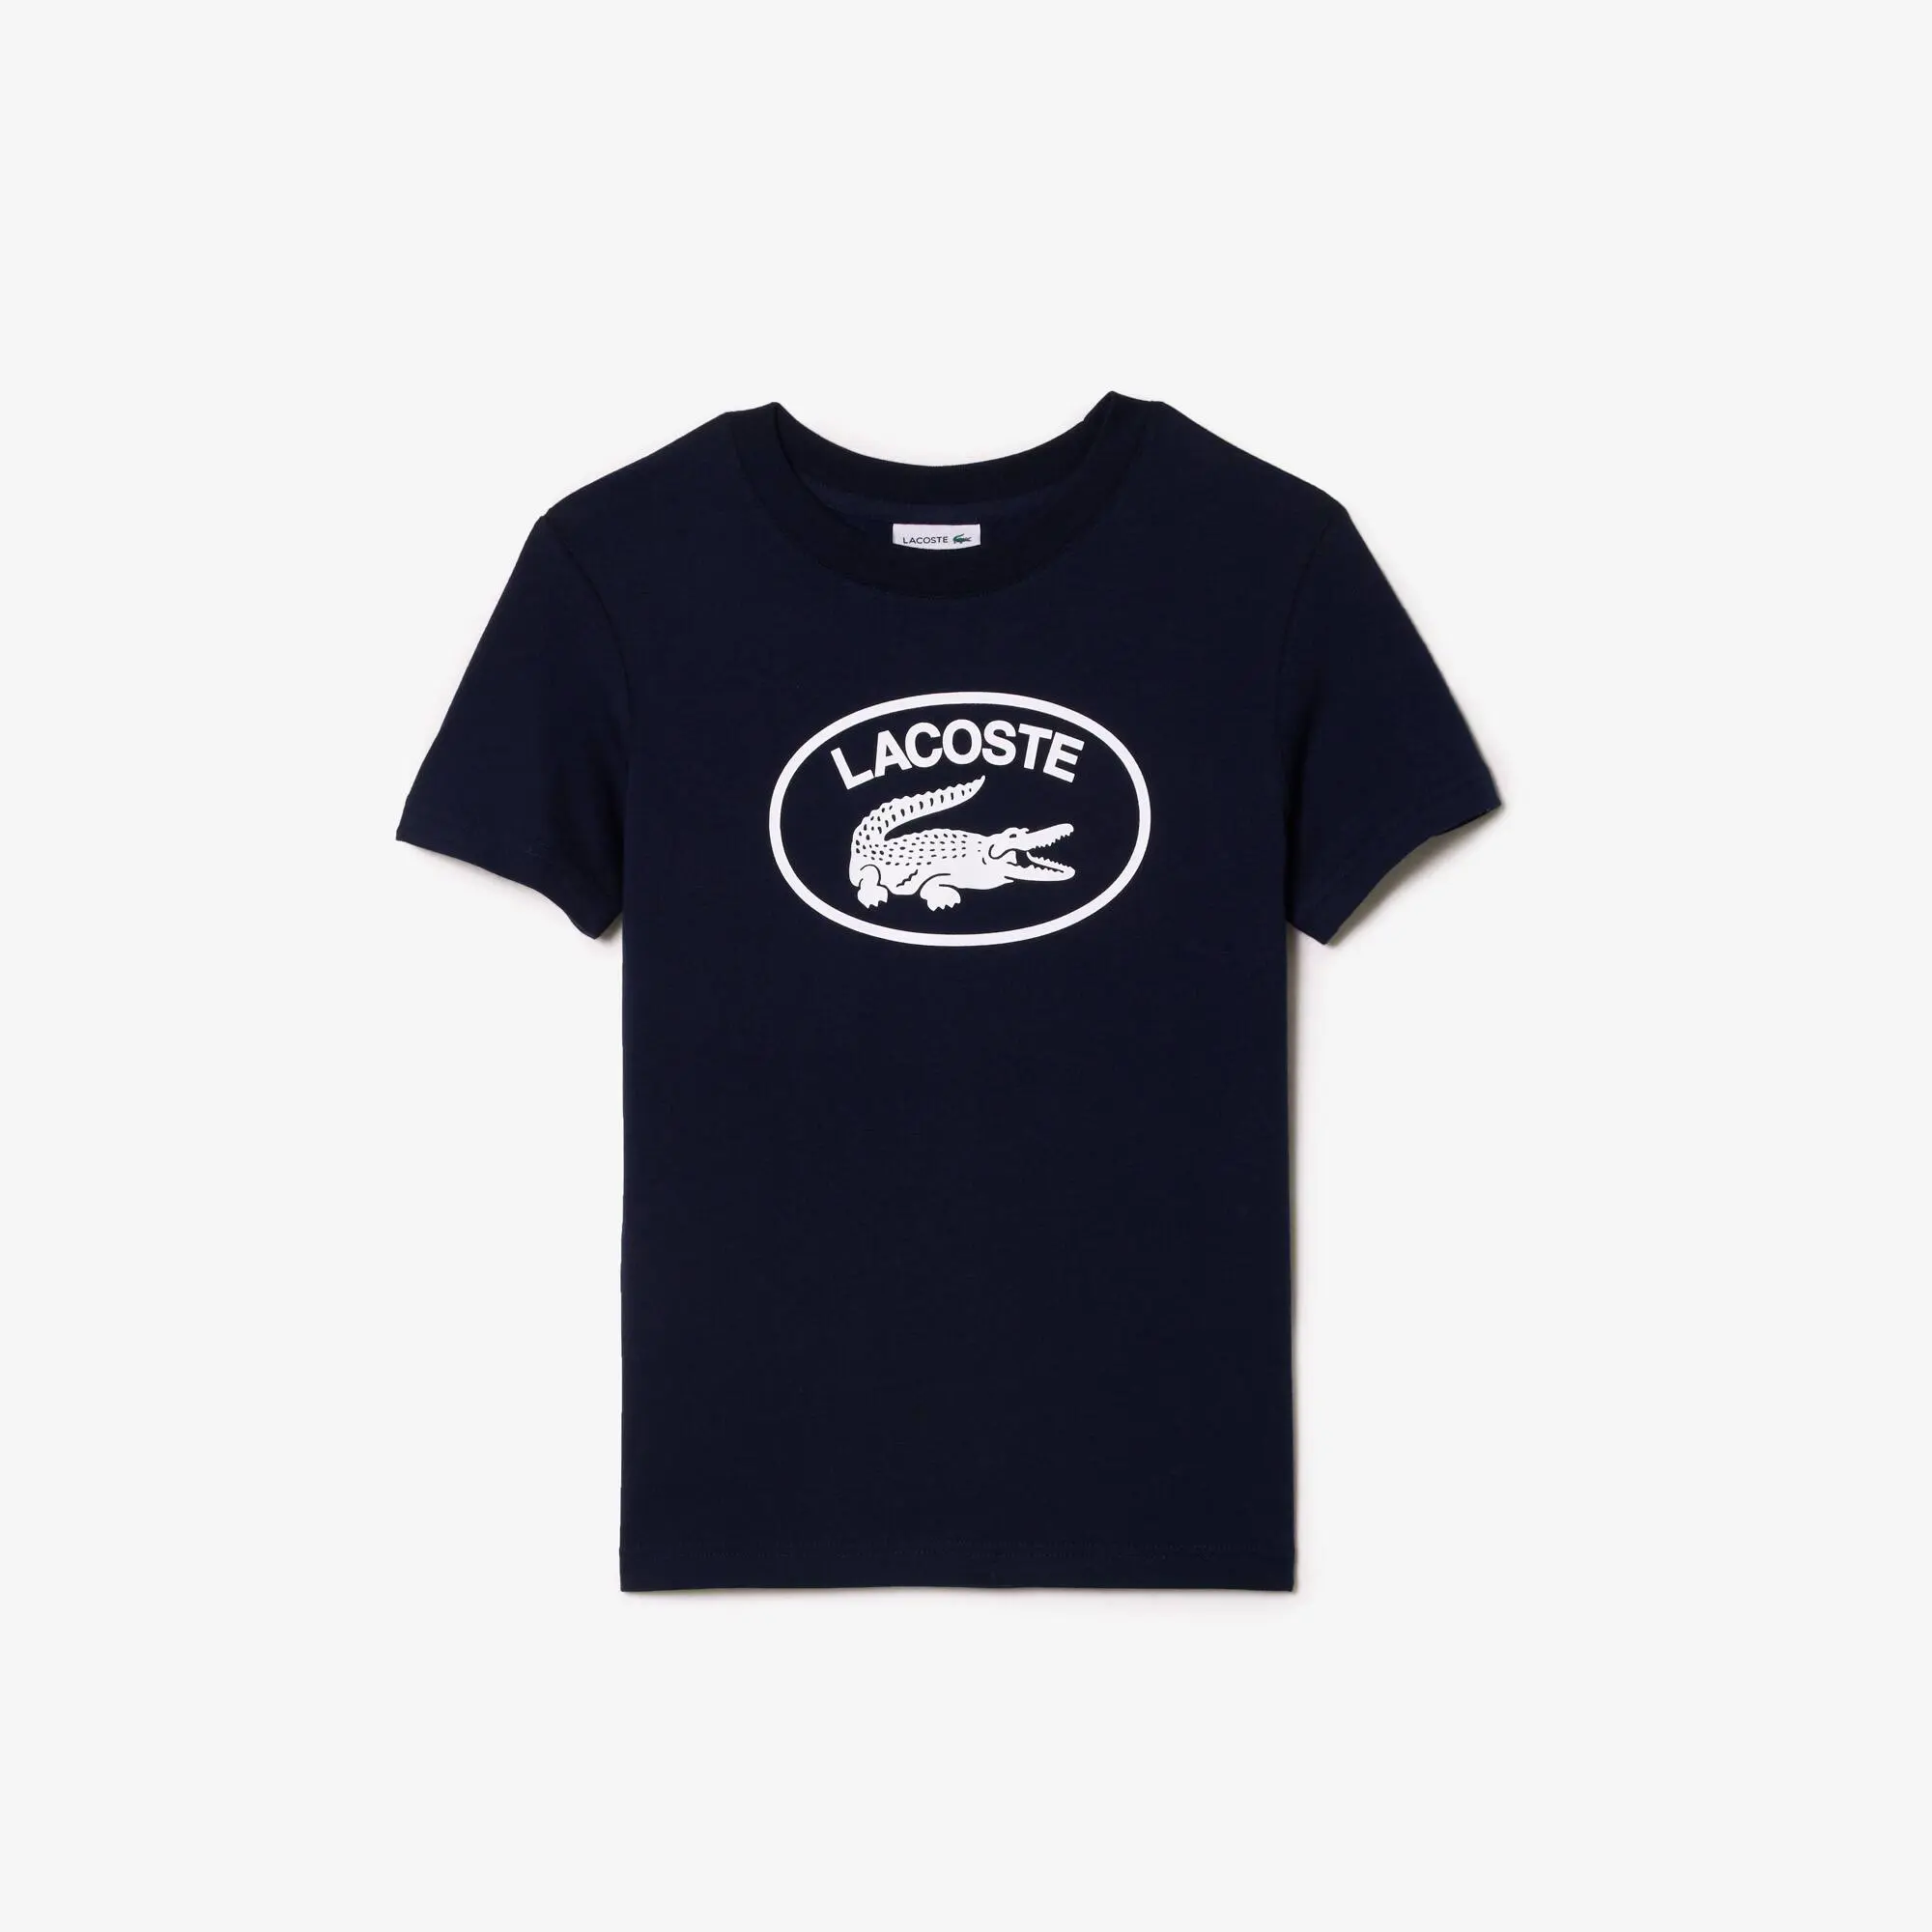 Lacoste Camiseta de niño Lacoste en tejido de punto de algodón con detalles de la marca a contraste. 2